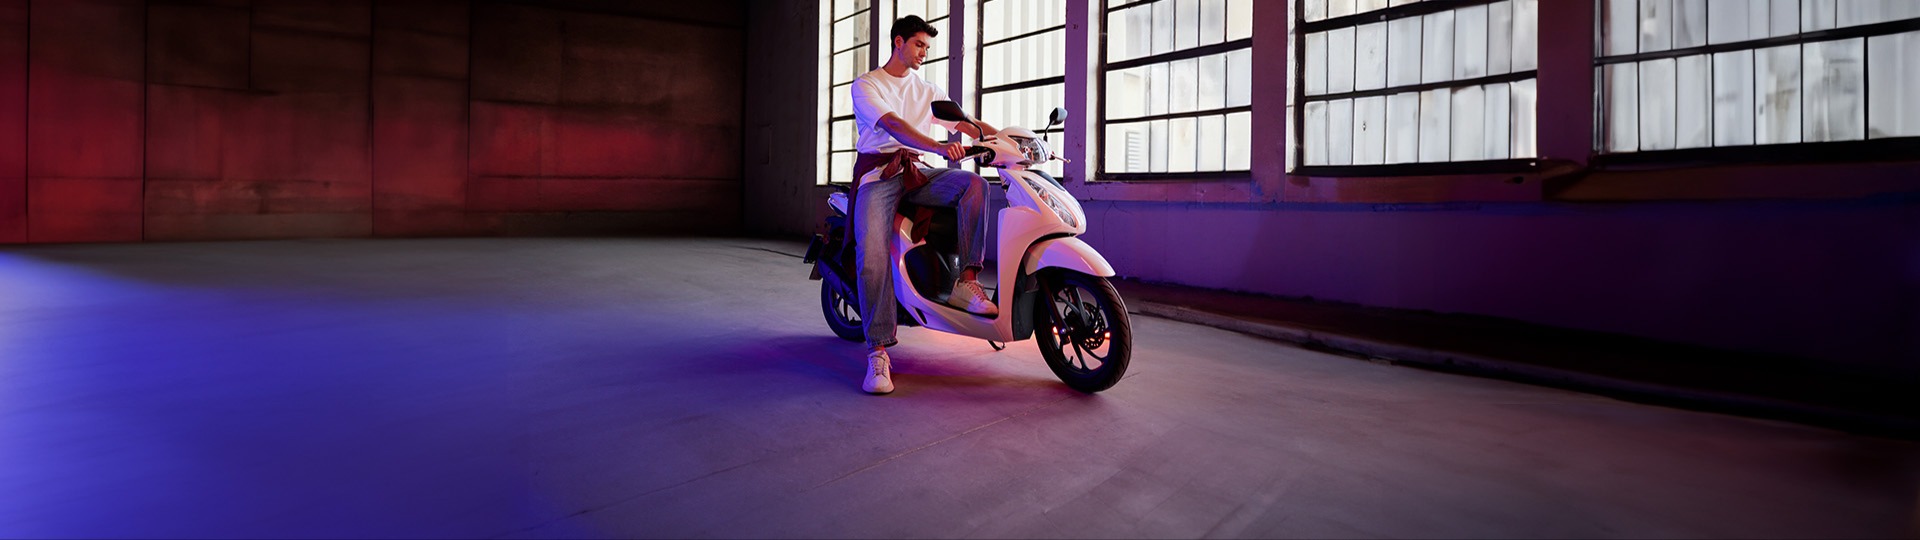  Honda Aysan 40.000 TL’ye vade farksız 12 ay taksitle sizin de ilk motosikletiniz Honda Dio olsun.